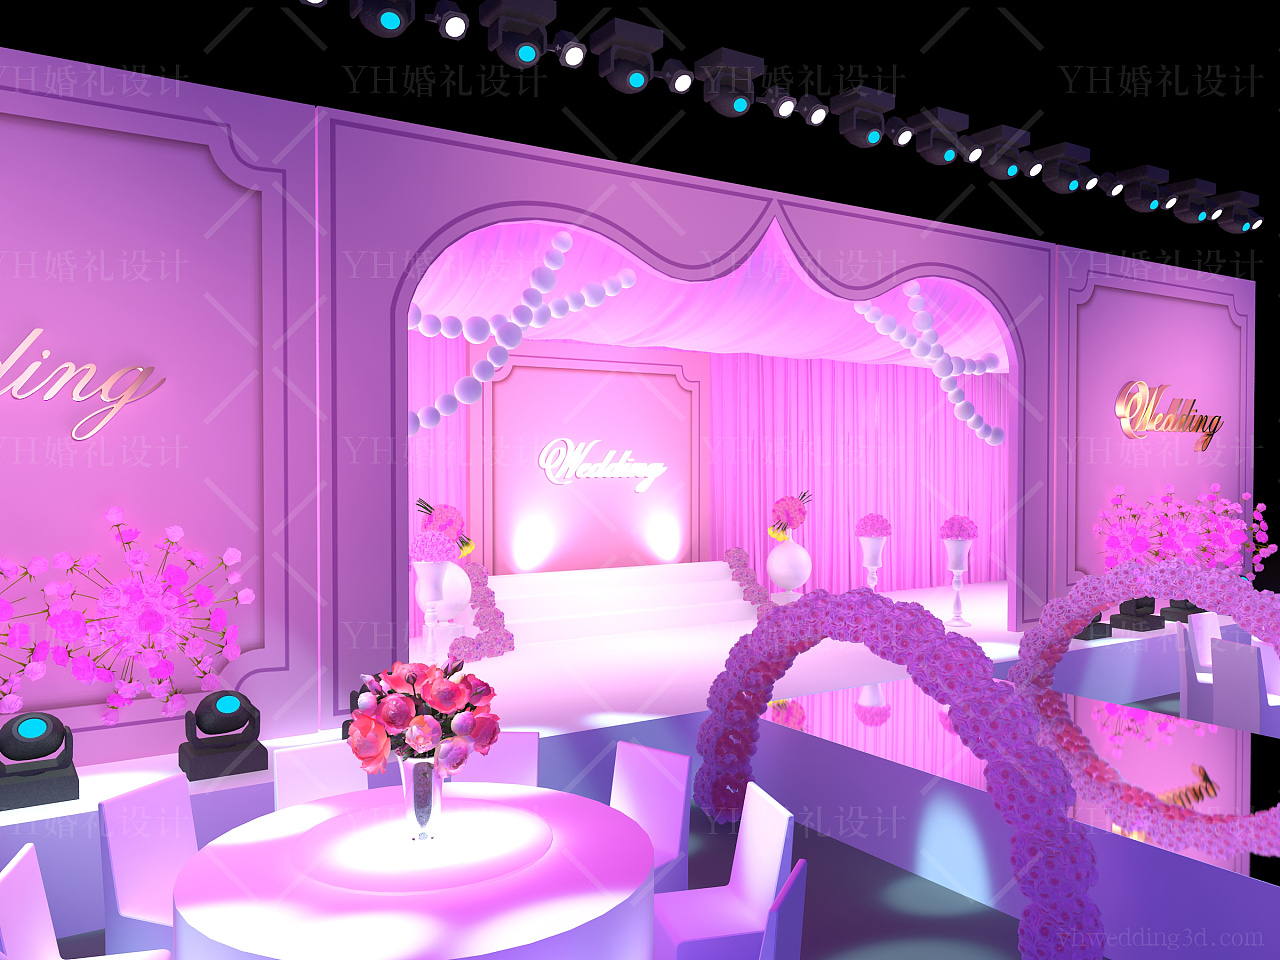 粉黛粉色主题室内韩式现场布置图片_效果图_策划价格-找我婚礼